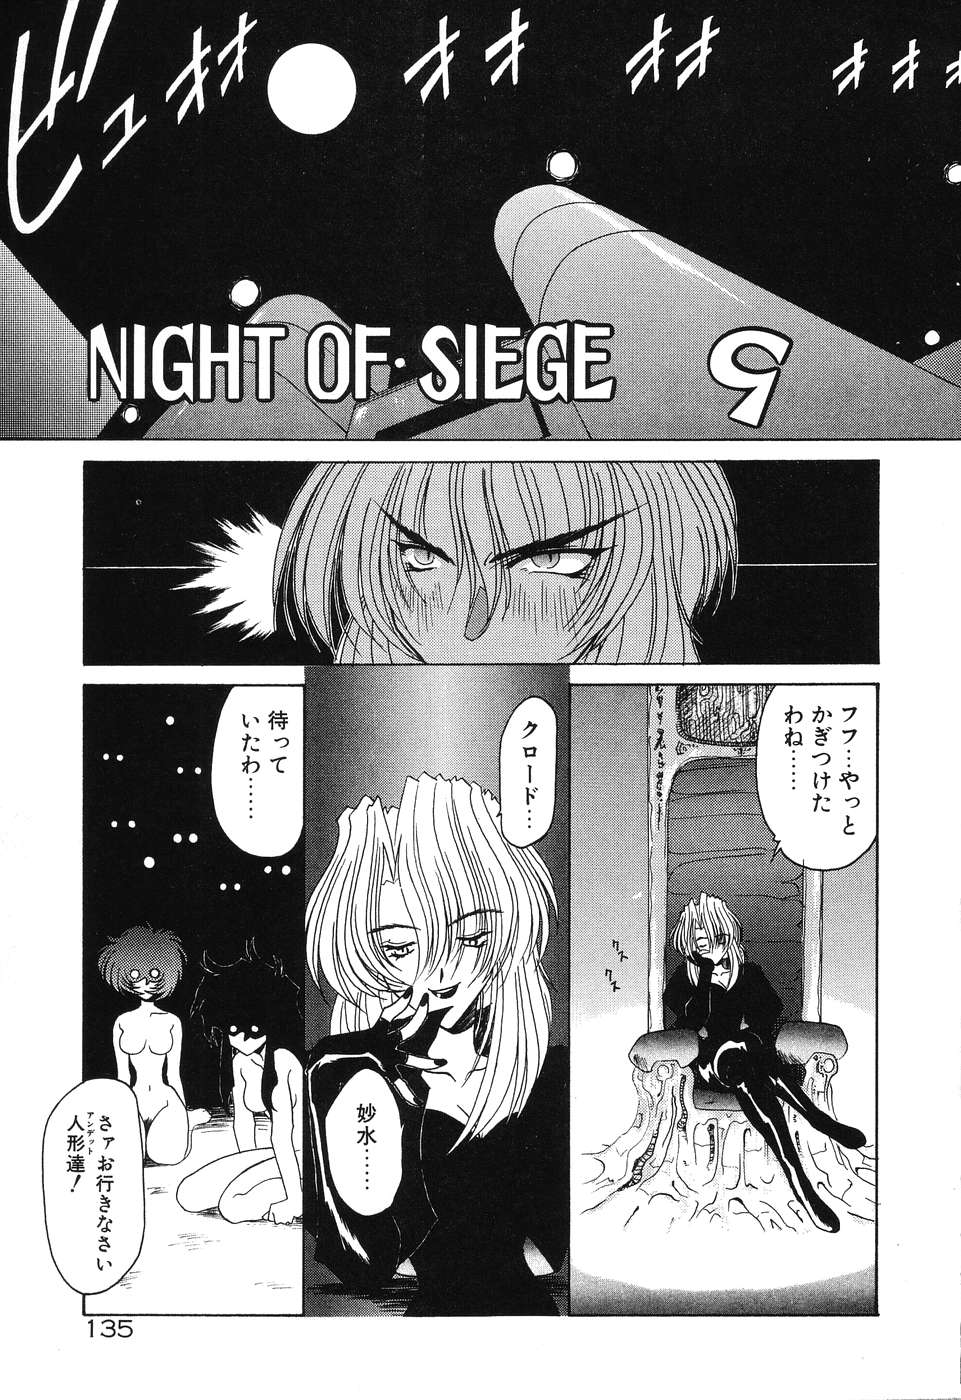 [梨加夫] Night Of Siege